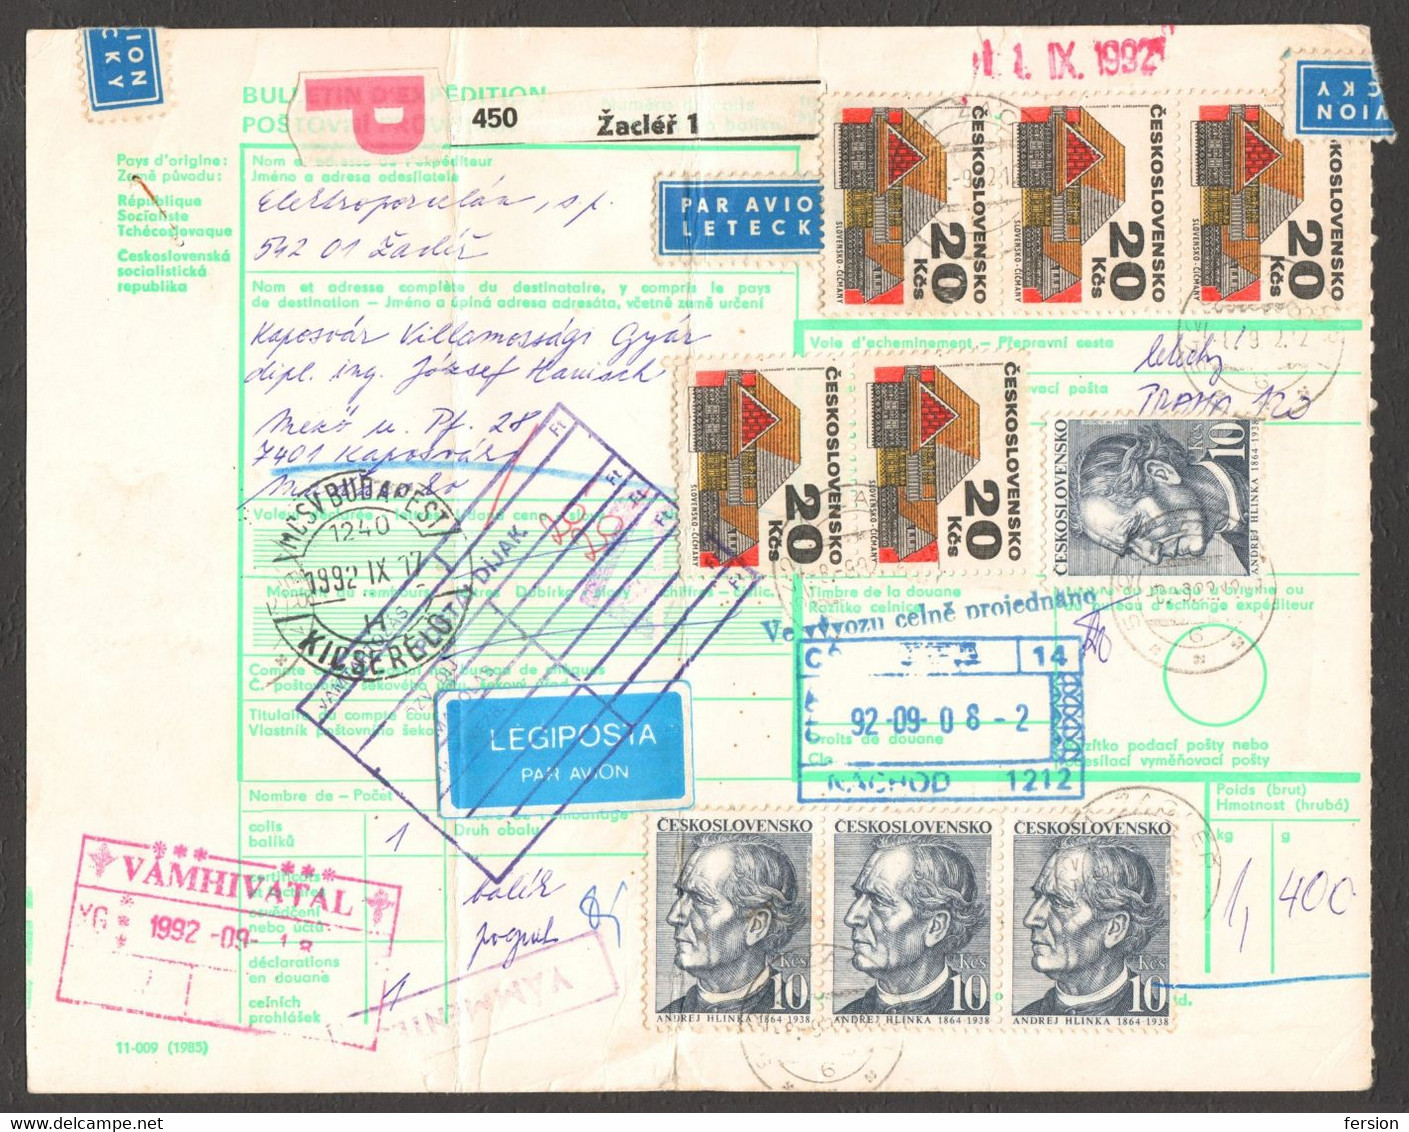 Bulletin D'expédition Parcel Packet Despatch FORM Czechoslovakia Hungary CUSTOMS Postmark AIR MAIL LABEL VIGNETTE 1992 - Unclassified